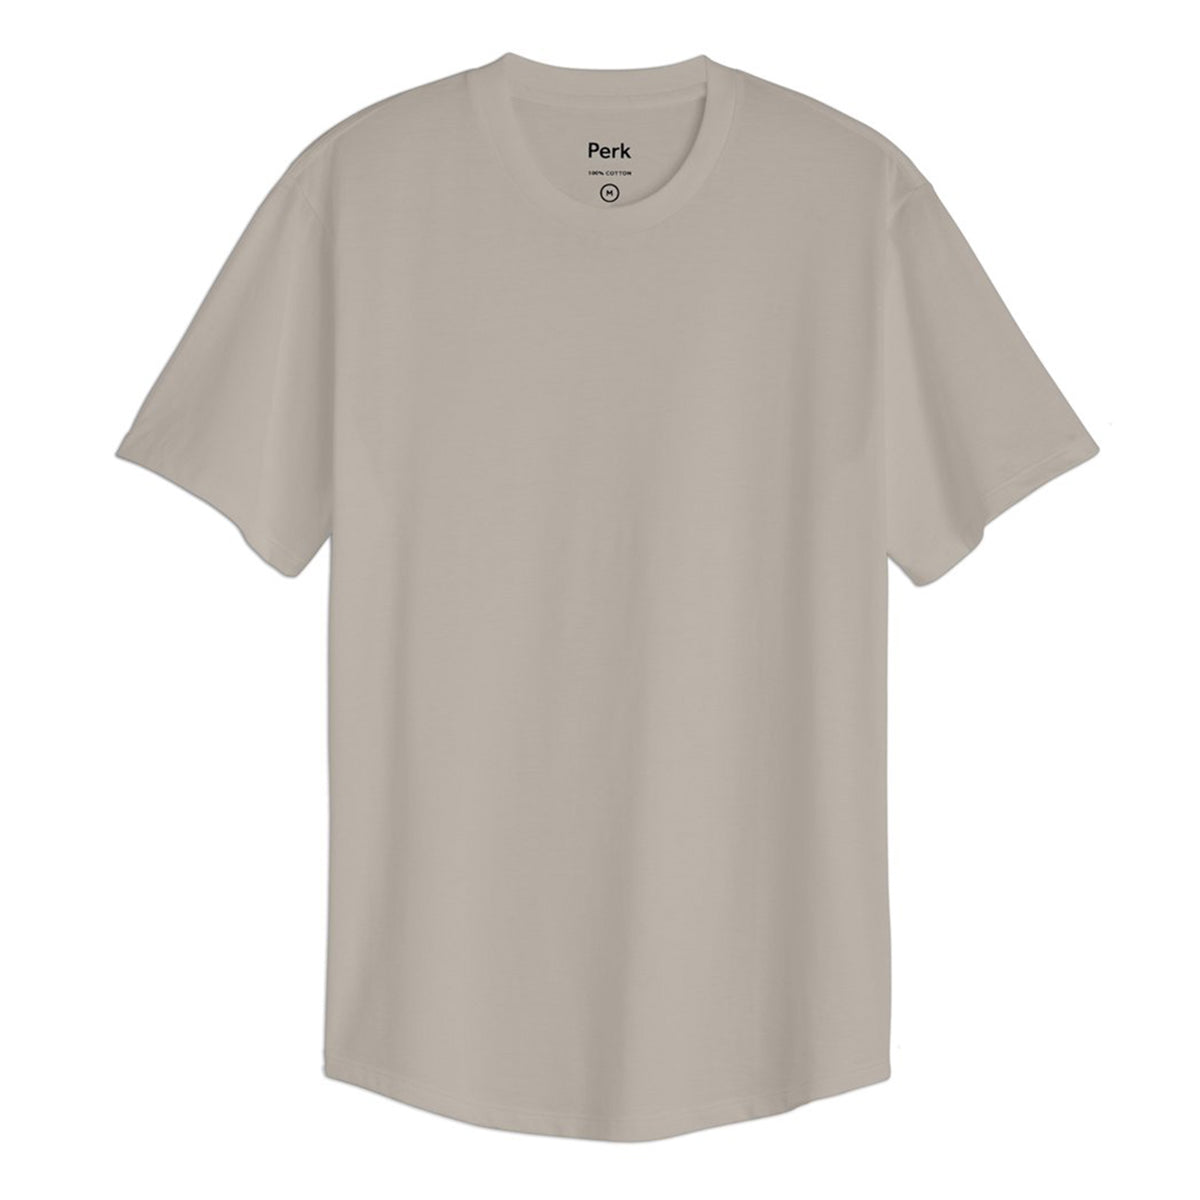 Men's T-shirt - pewcci